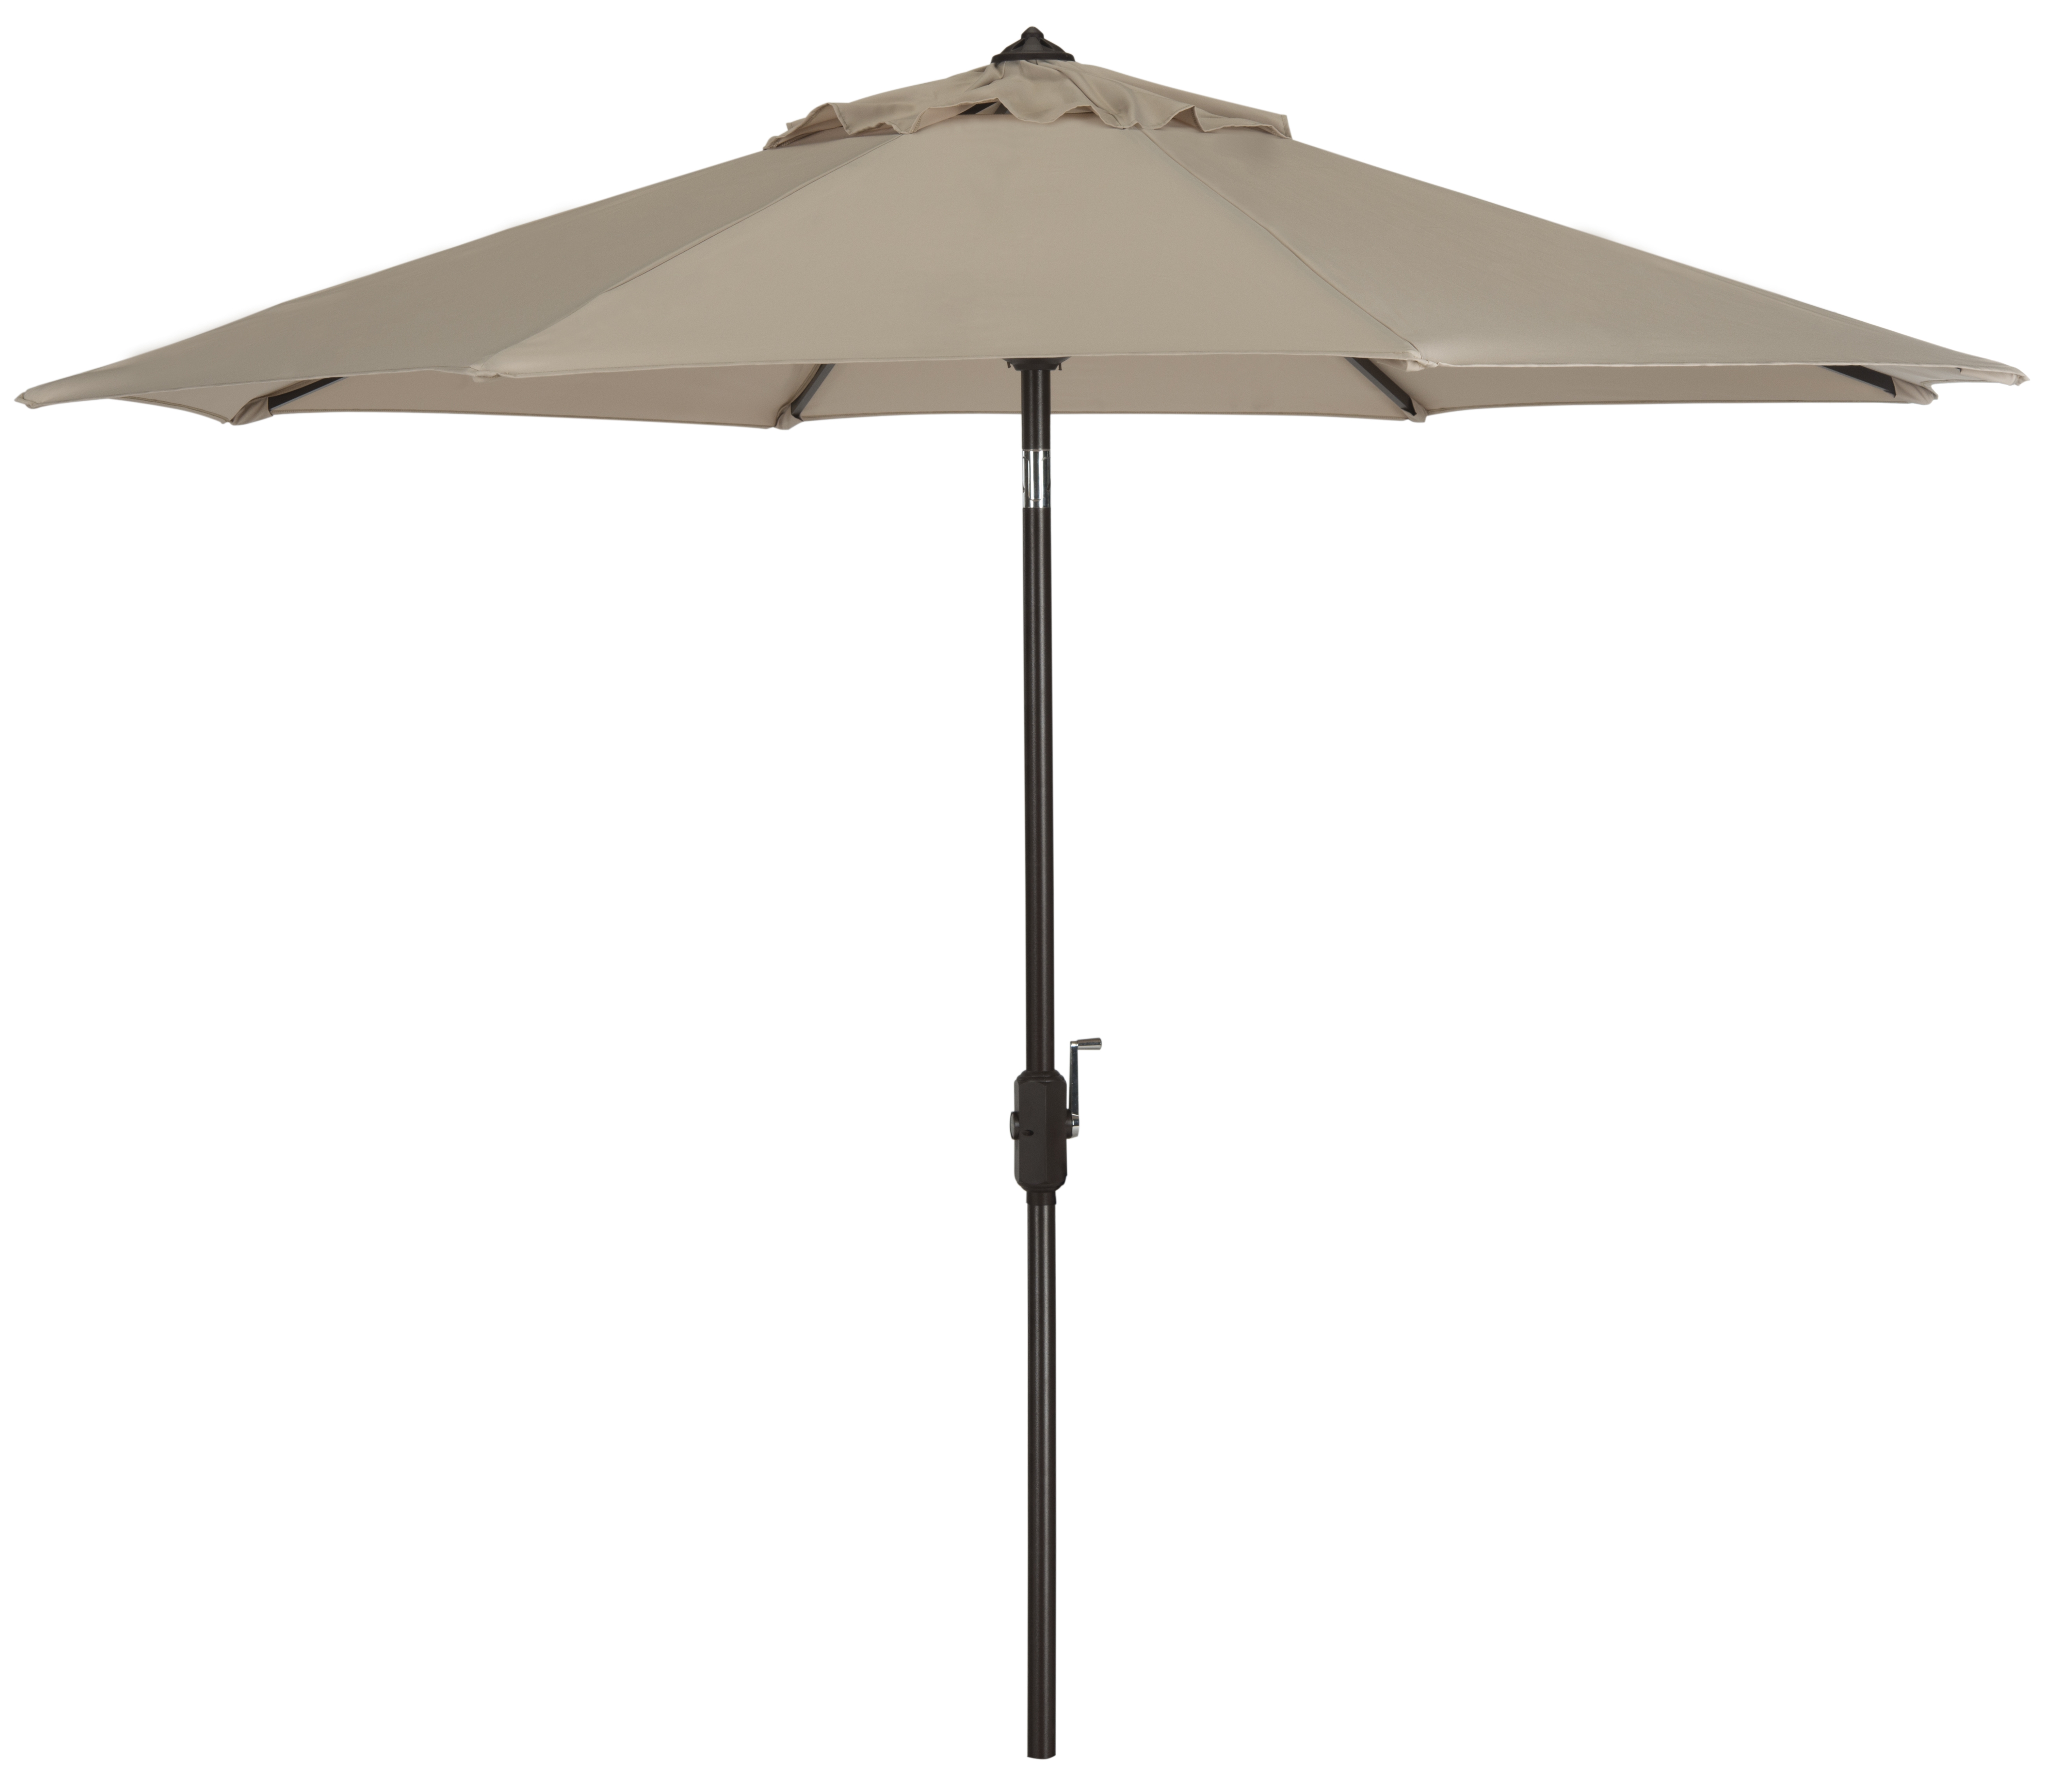 Uv Resistant Ortega 9 Ft Auto Tilt Crank Umbrella - Beige - Safavieh - Image 0